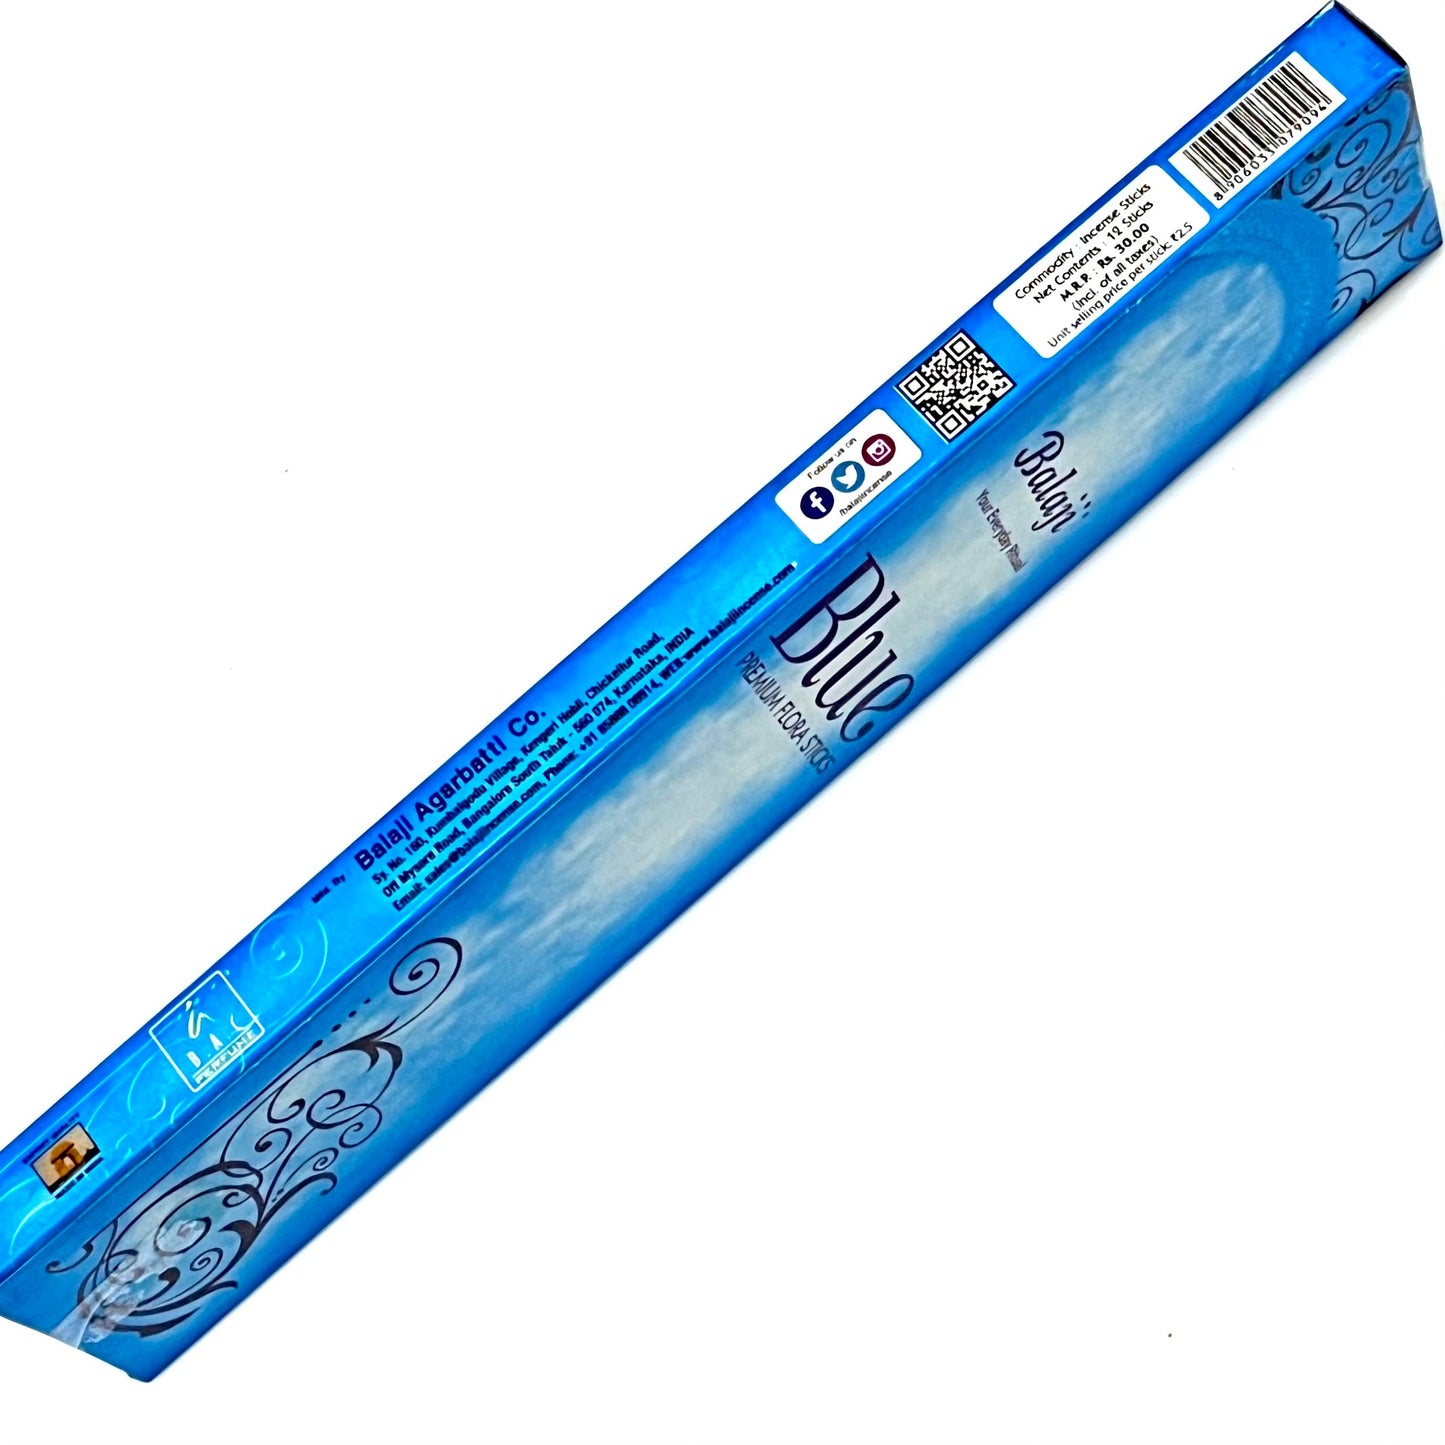 Balaji BLUE Premium Flora Incense Sticks (12 sticks)